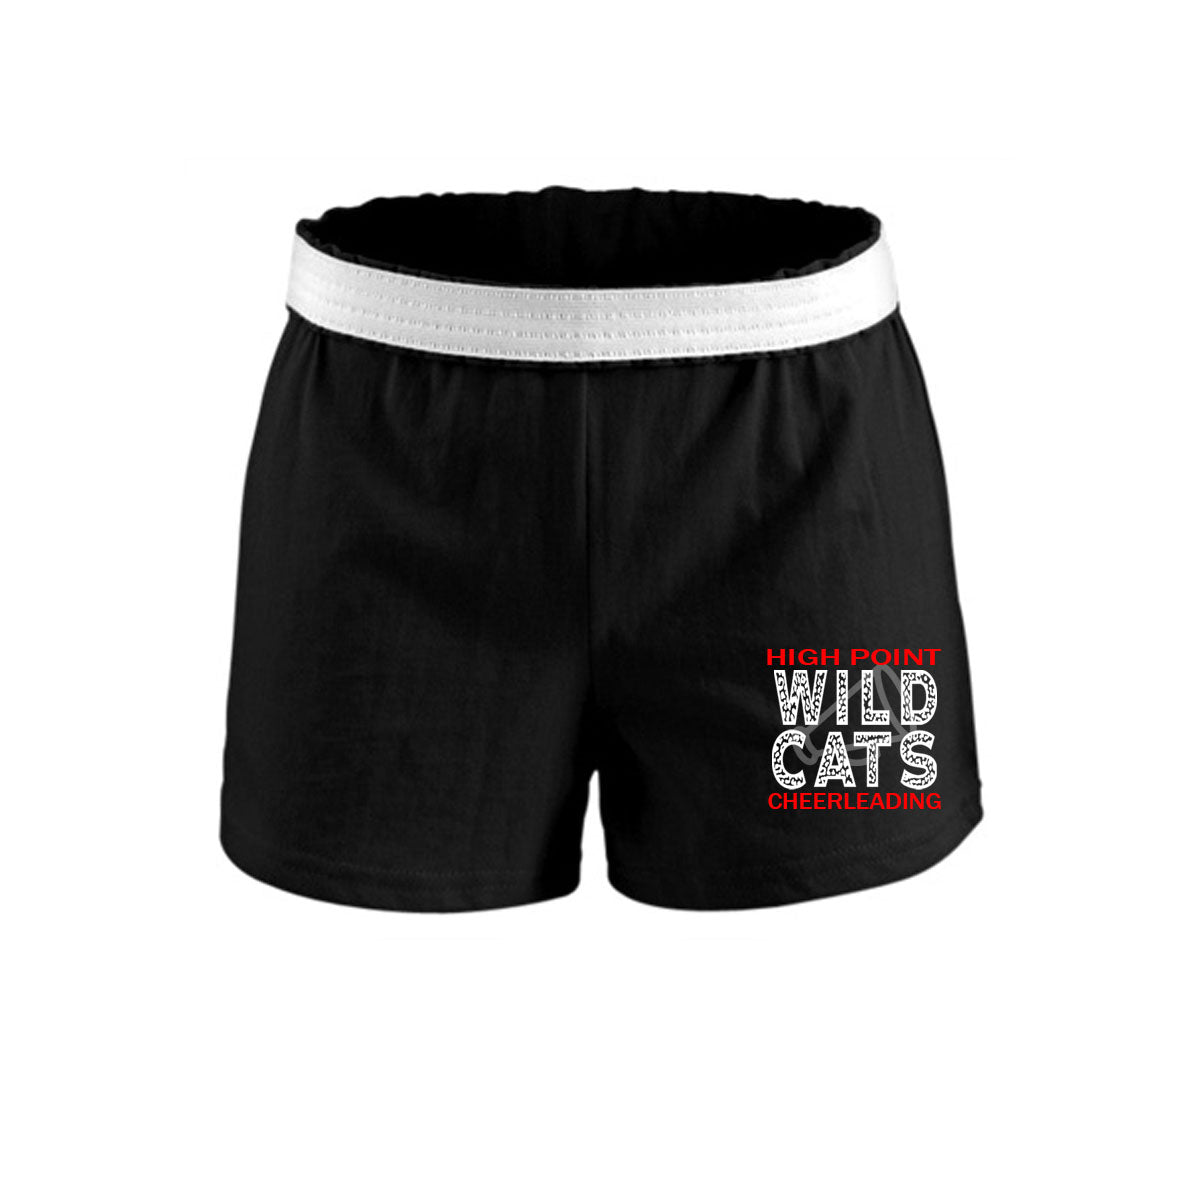 Wildcats Cheer Design 1 Shorts